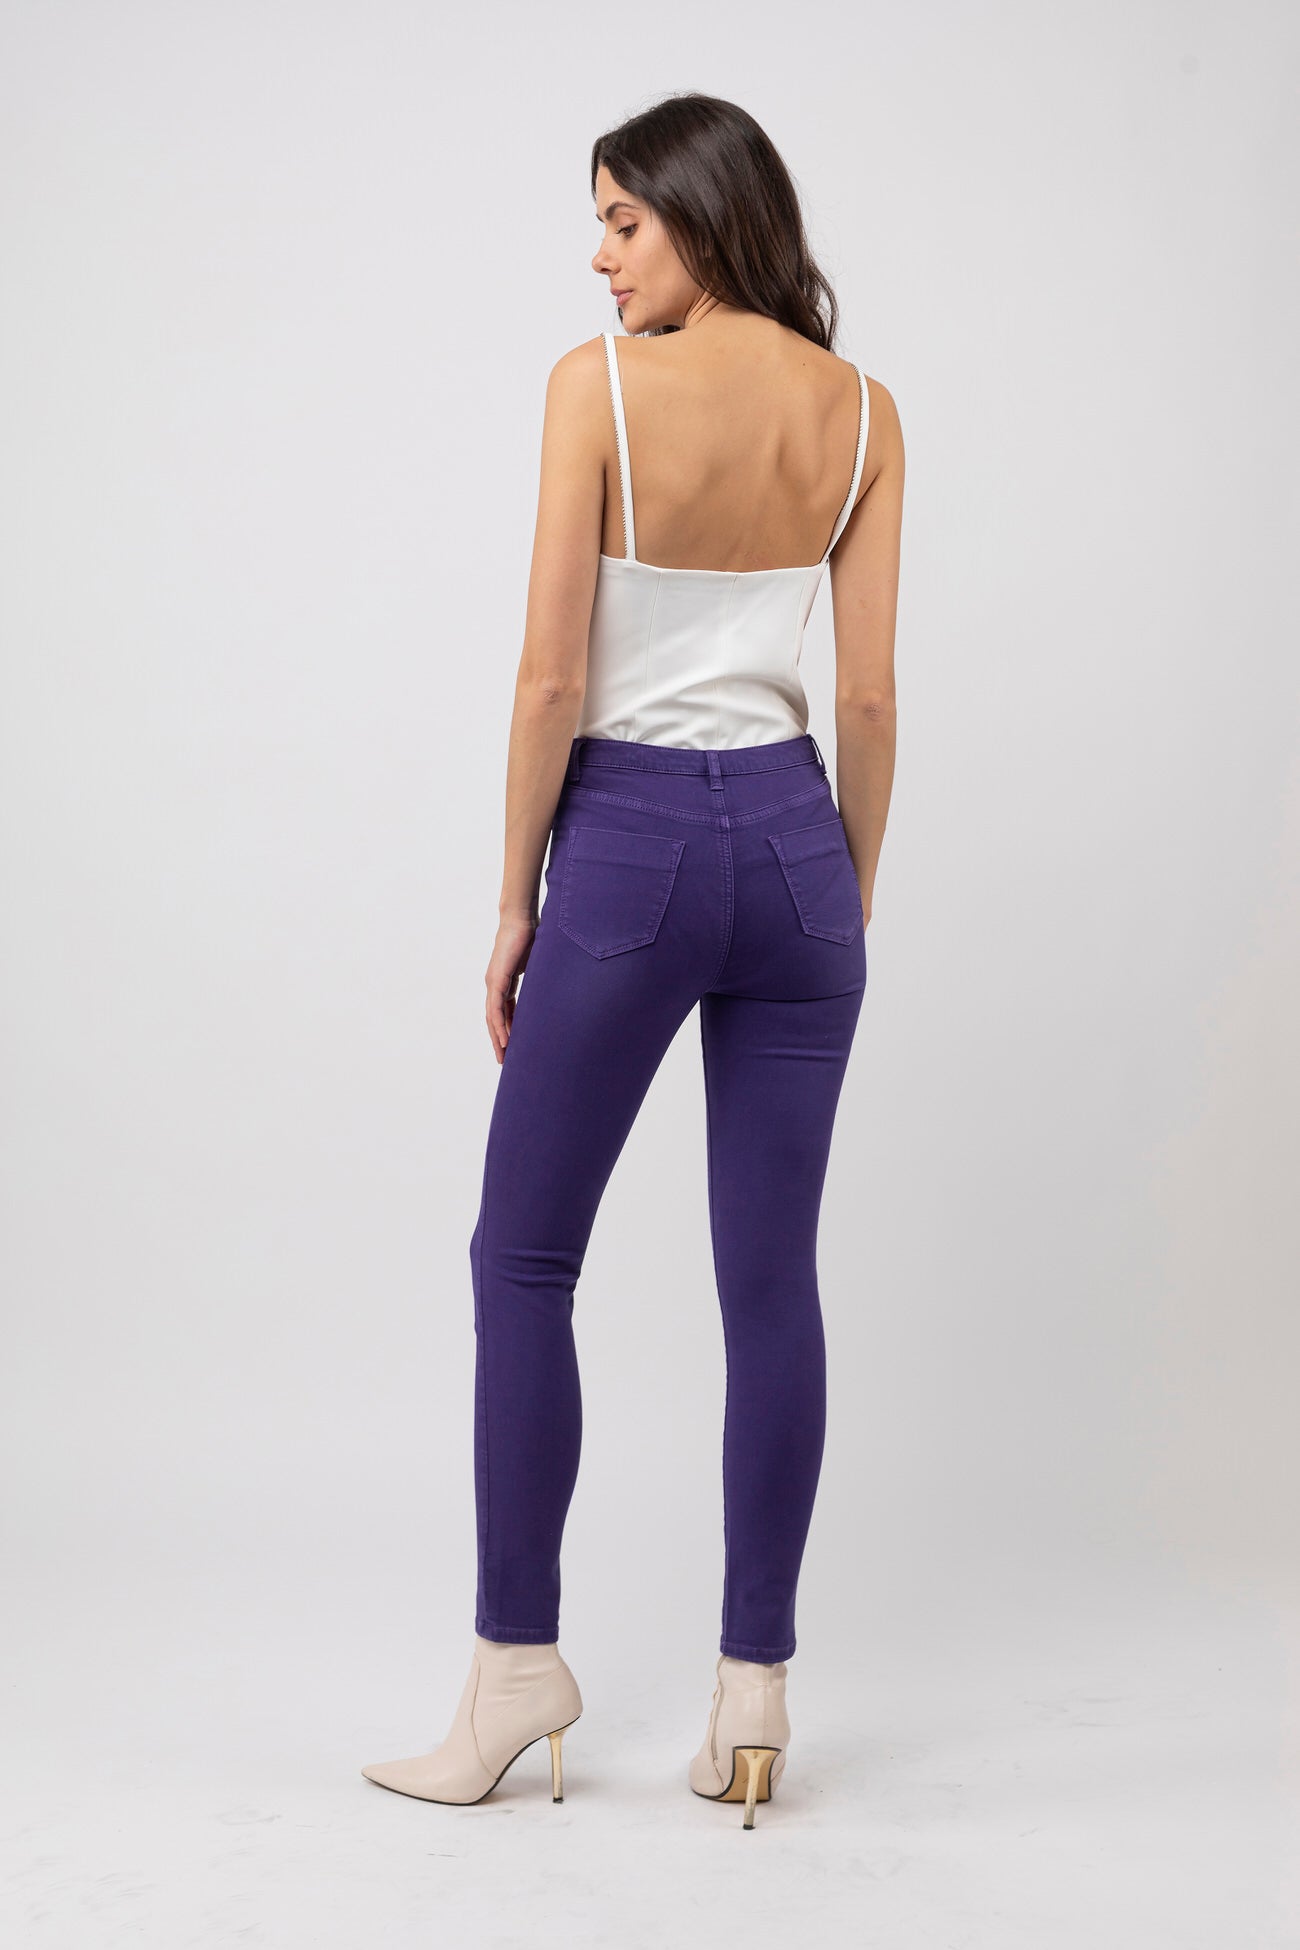 Pantalon Snee Haute Solaria - Purple Rain